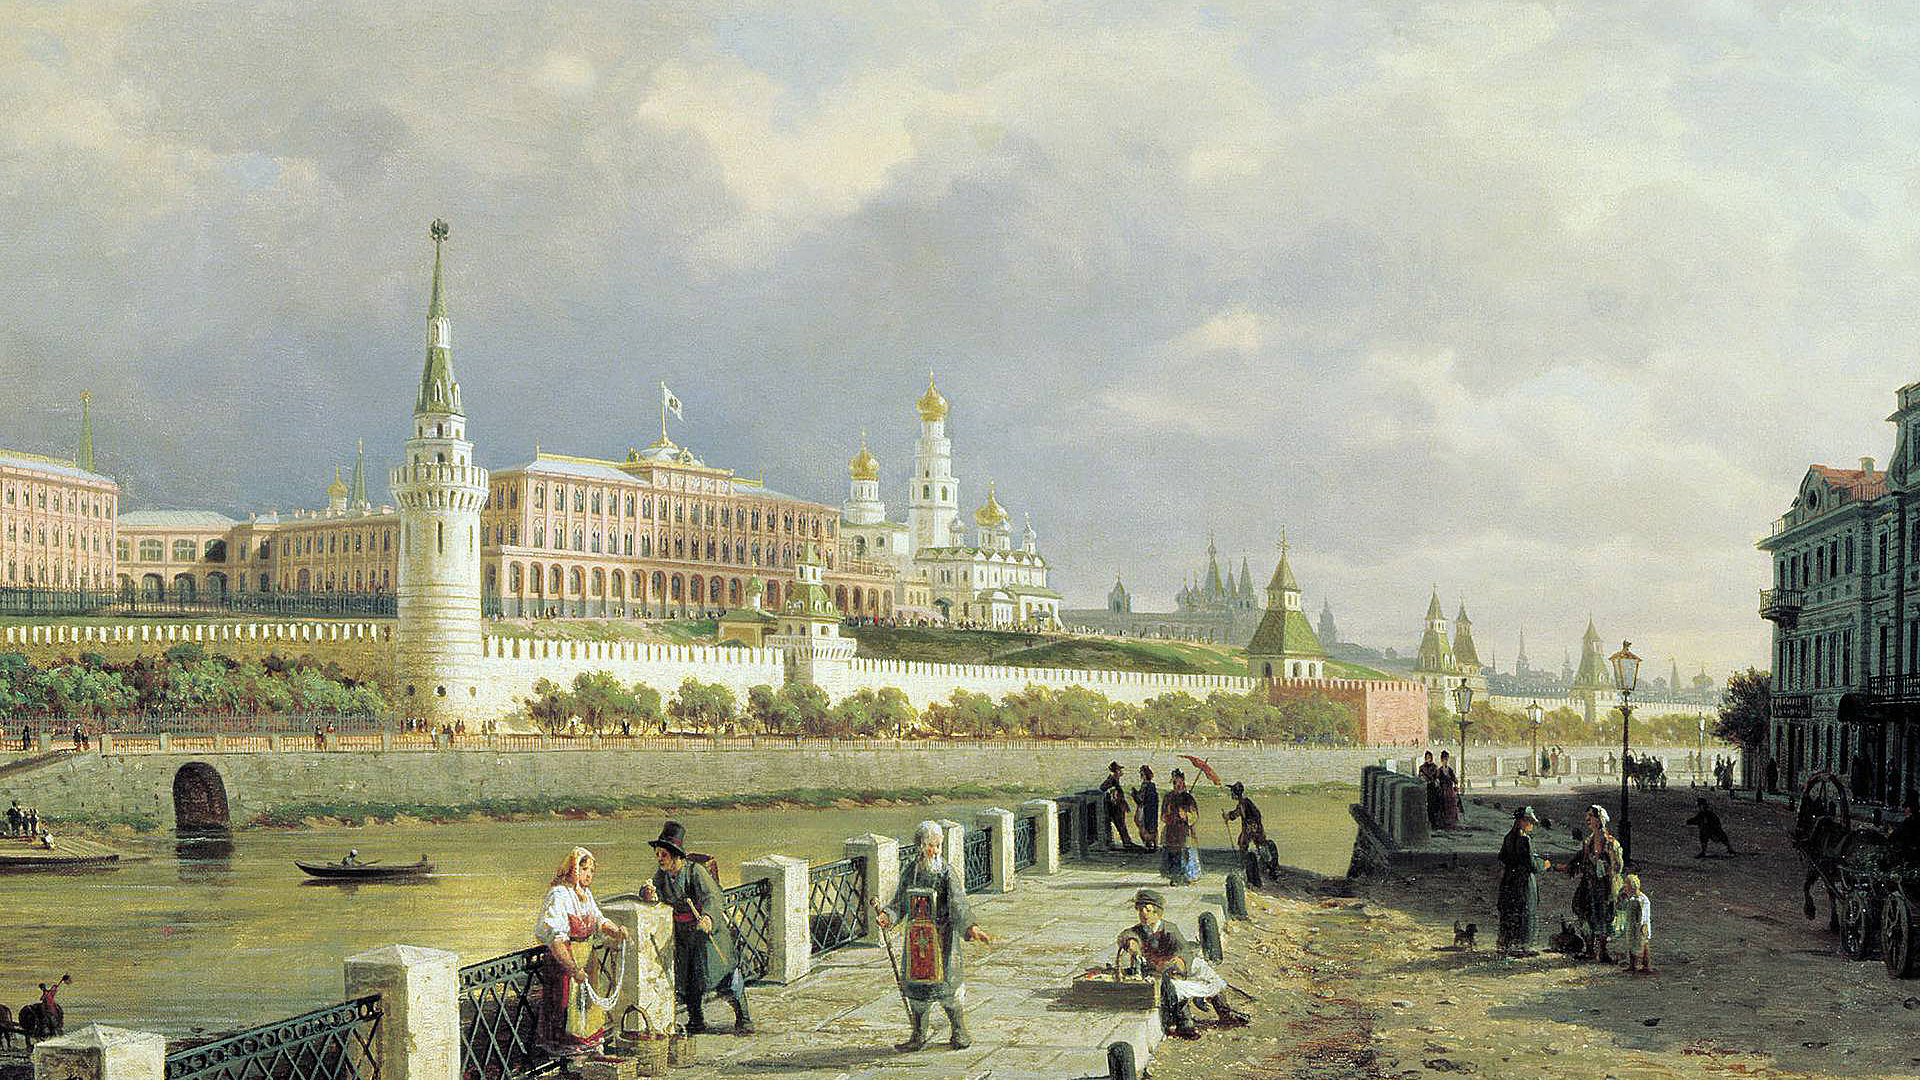 Картина, холст, масло, вид московского кремля.